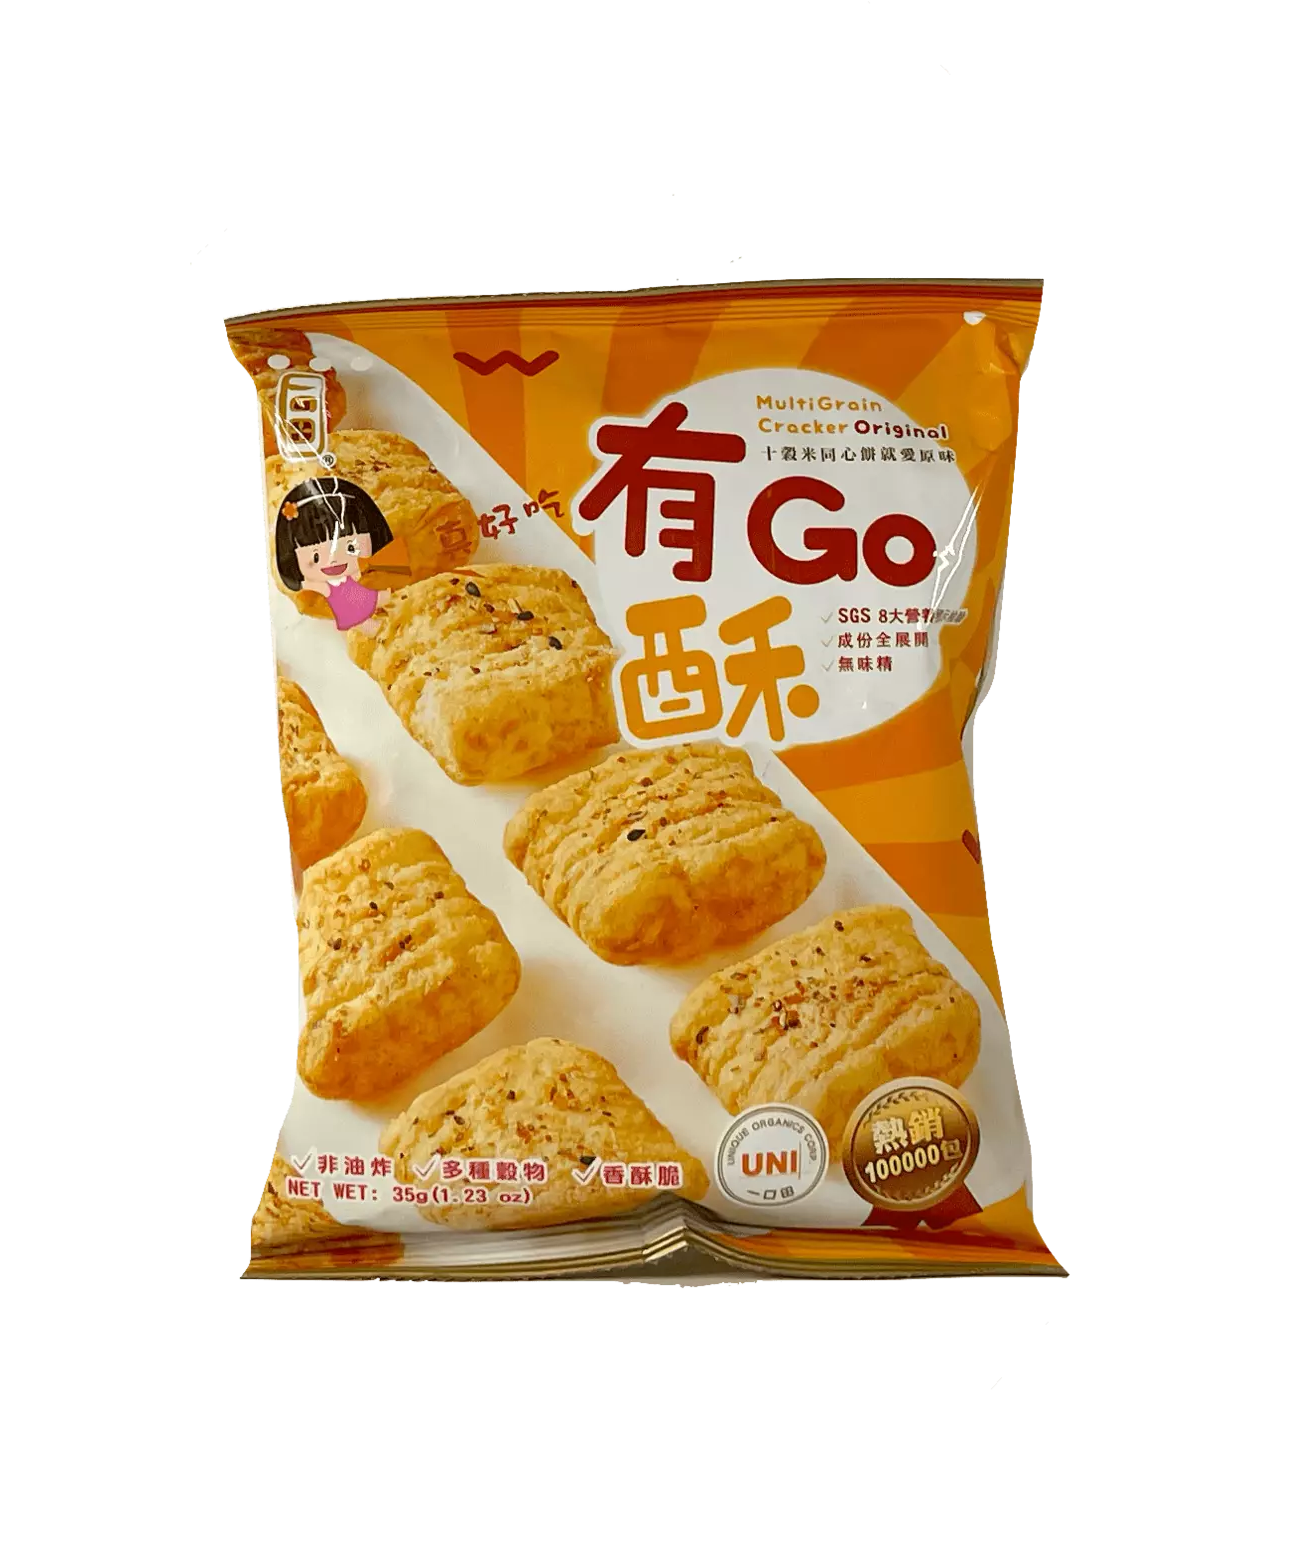 Multi Grain Cracker Original 35g Yi Kou Tian Taiwan